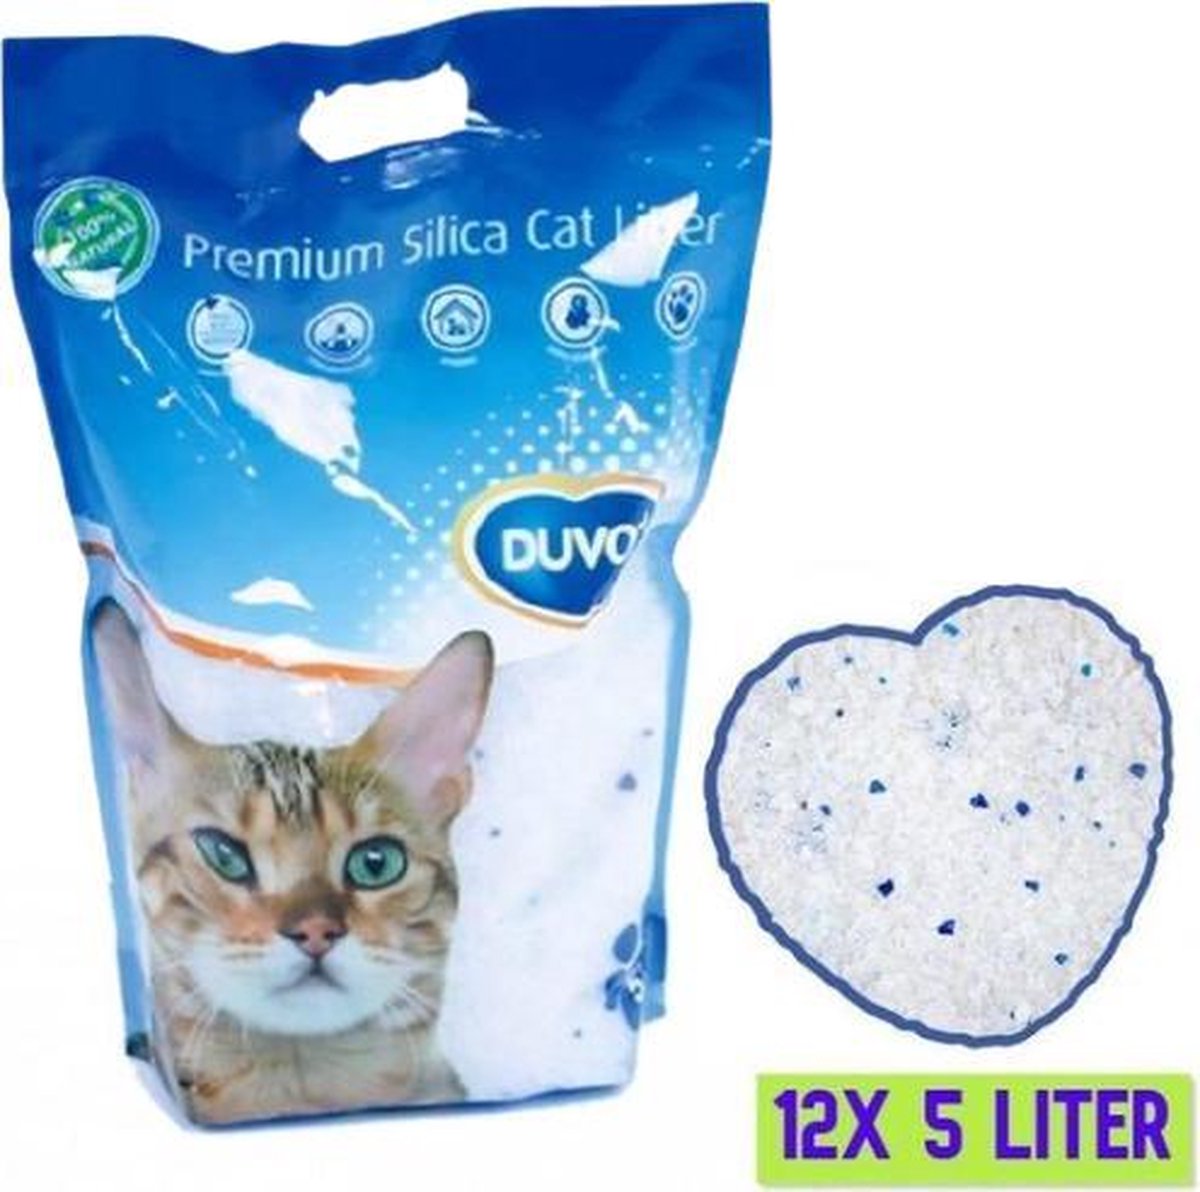 Duvo+ Premium Silica Kattenbakvulling - Voordeelverpakking - 12x 5L - Incl. Wol muisje met catnip!